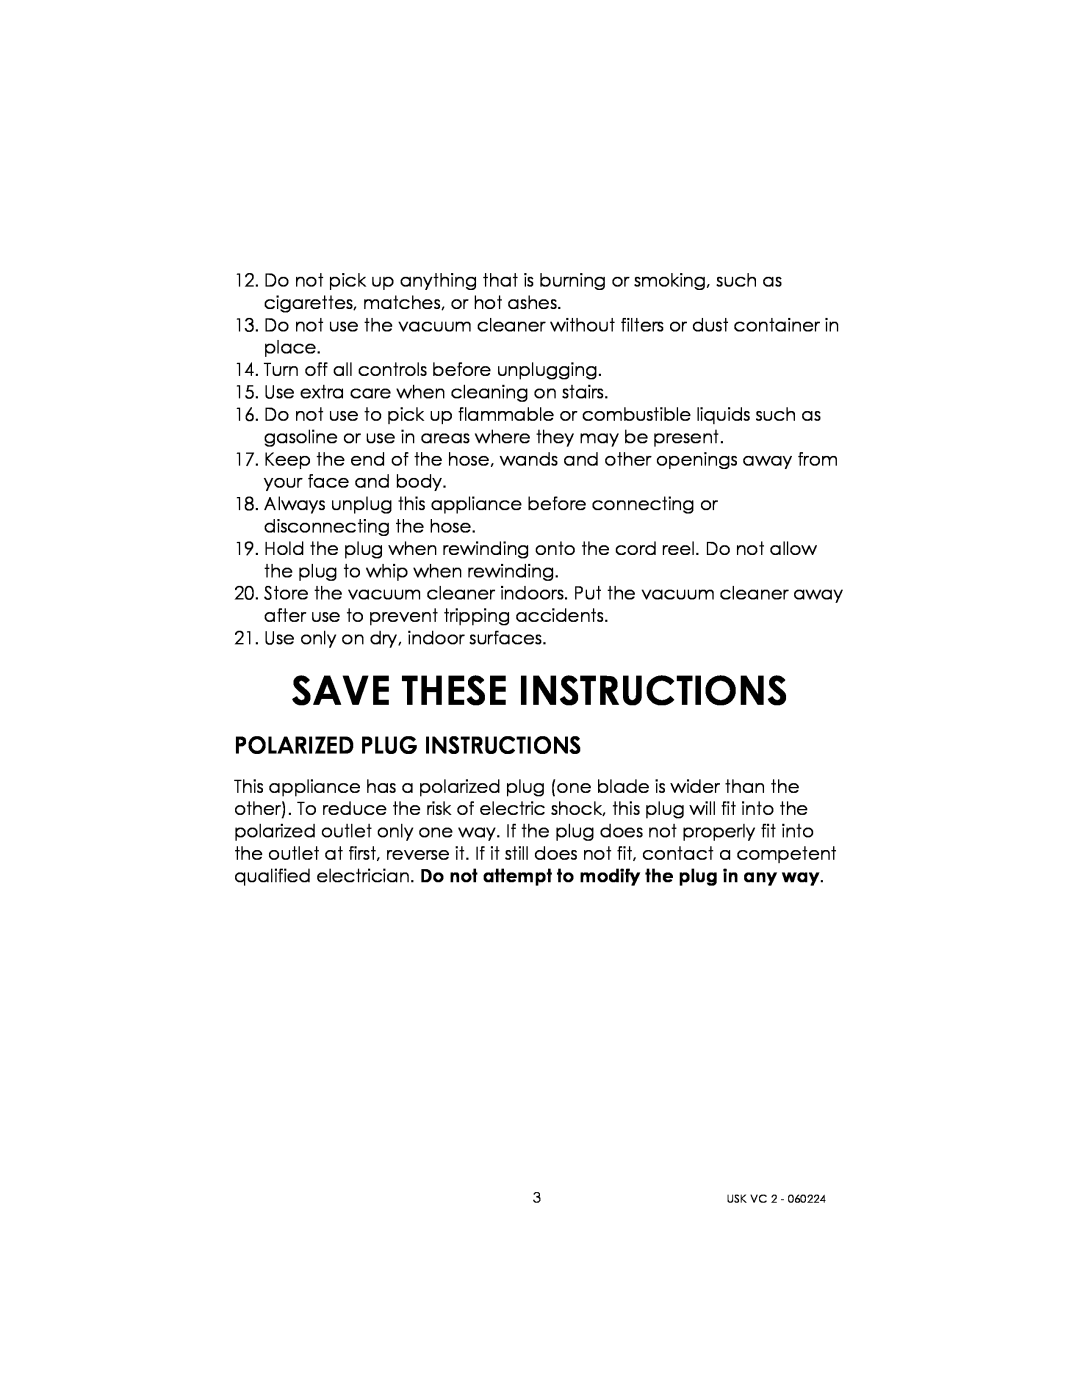 Kalorik USK VC 2 manual Save These Instructions, Polarized Plug Instructions 